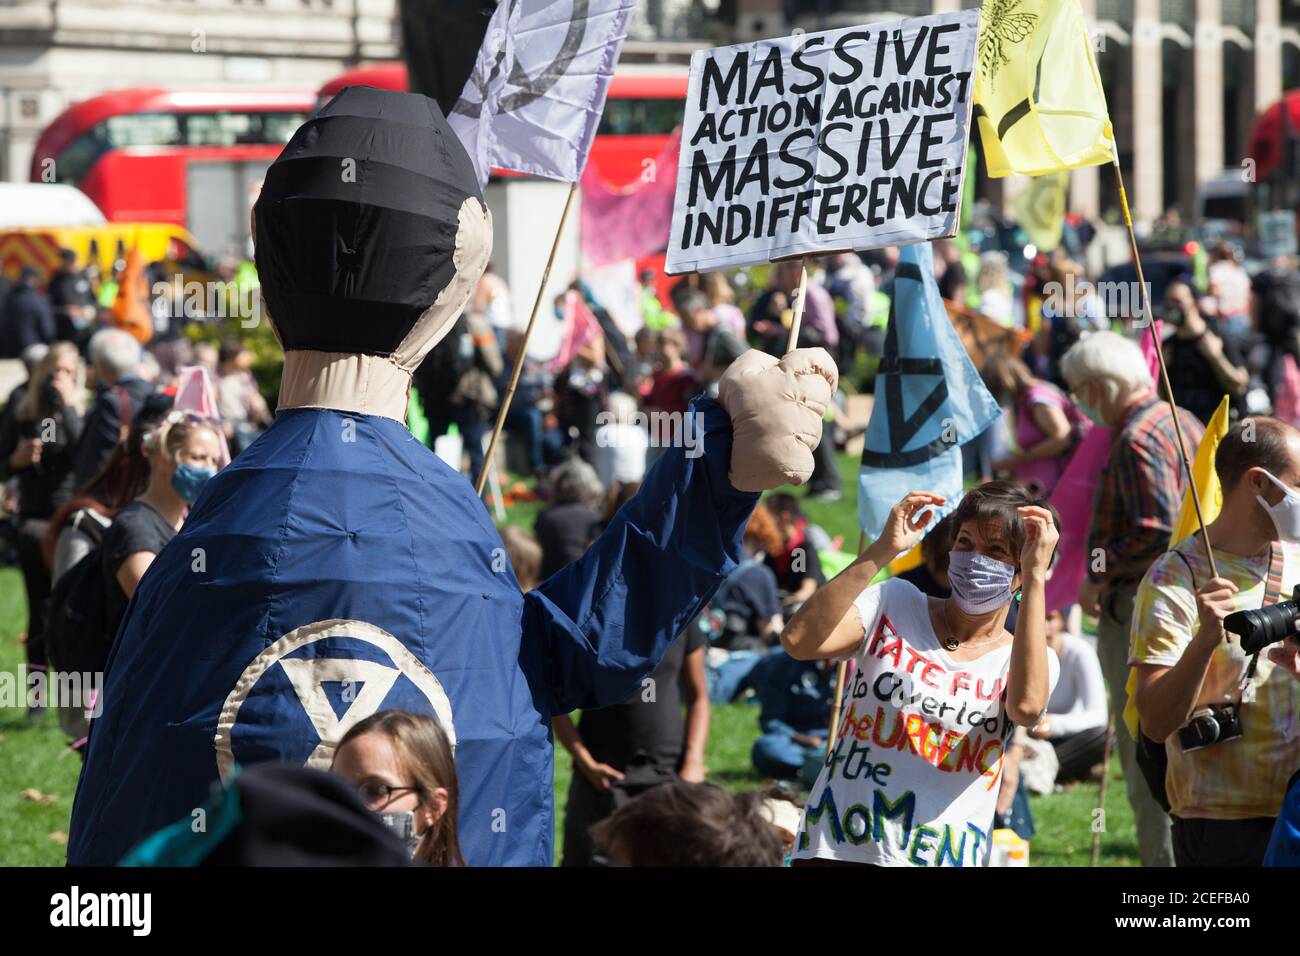 London, Großbritannien, 1. Sept. 2020: Die Rebellion des Aussterbens Demonstranten marschierten auf dem Parliament Square und durchbrochen die Polizeilinien, um die umliegenden Straßen zu schließen. Es wurden einige Verhaftungen vorgenommen. Die Umweltaktivisten fordern die Abgeordneten auf, das "Climate and Ecological Emergencies Bill" (CEE Bill) zu unterstützen. Anna Watson/Alamy Live News Stockfoto